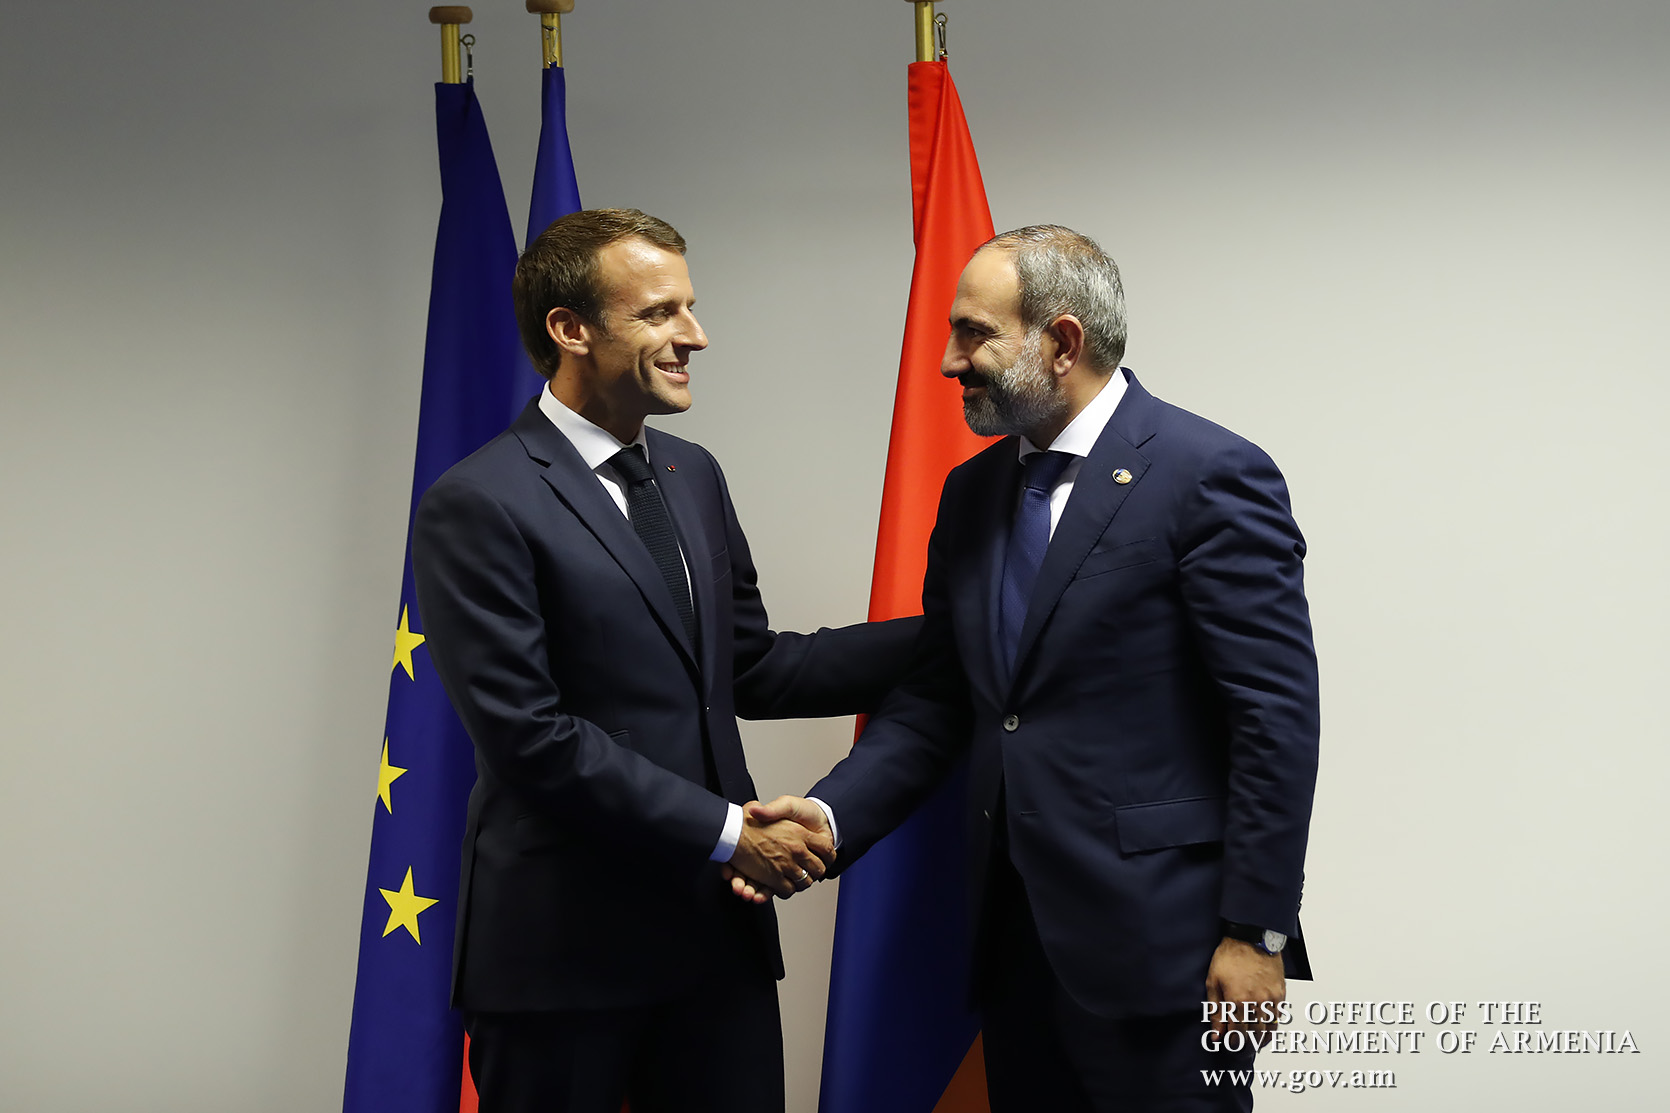 Франция готова предоставить Армении кредит в размере 50-80 млн евро - Макрон